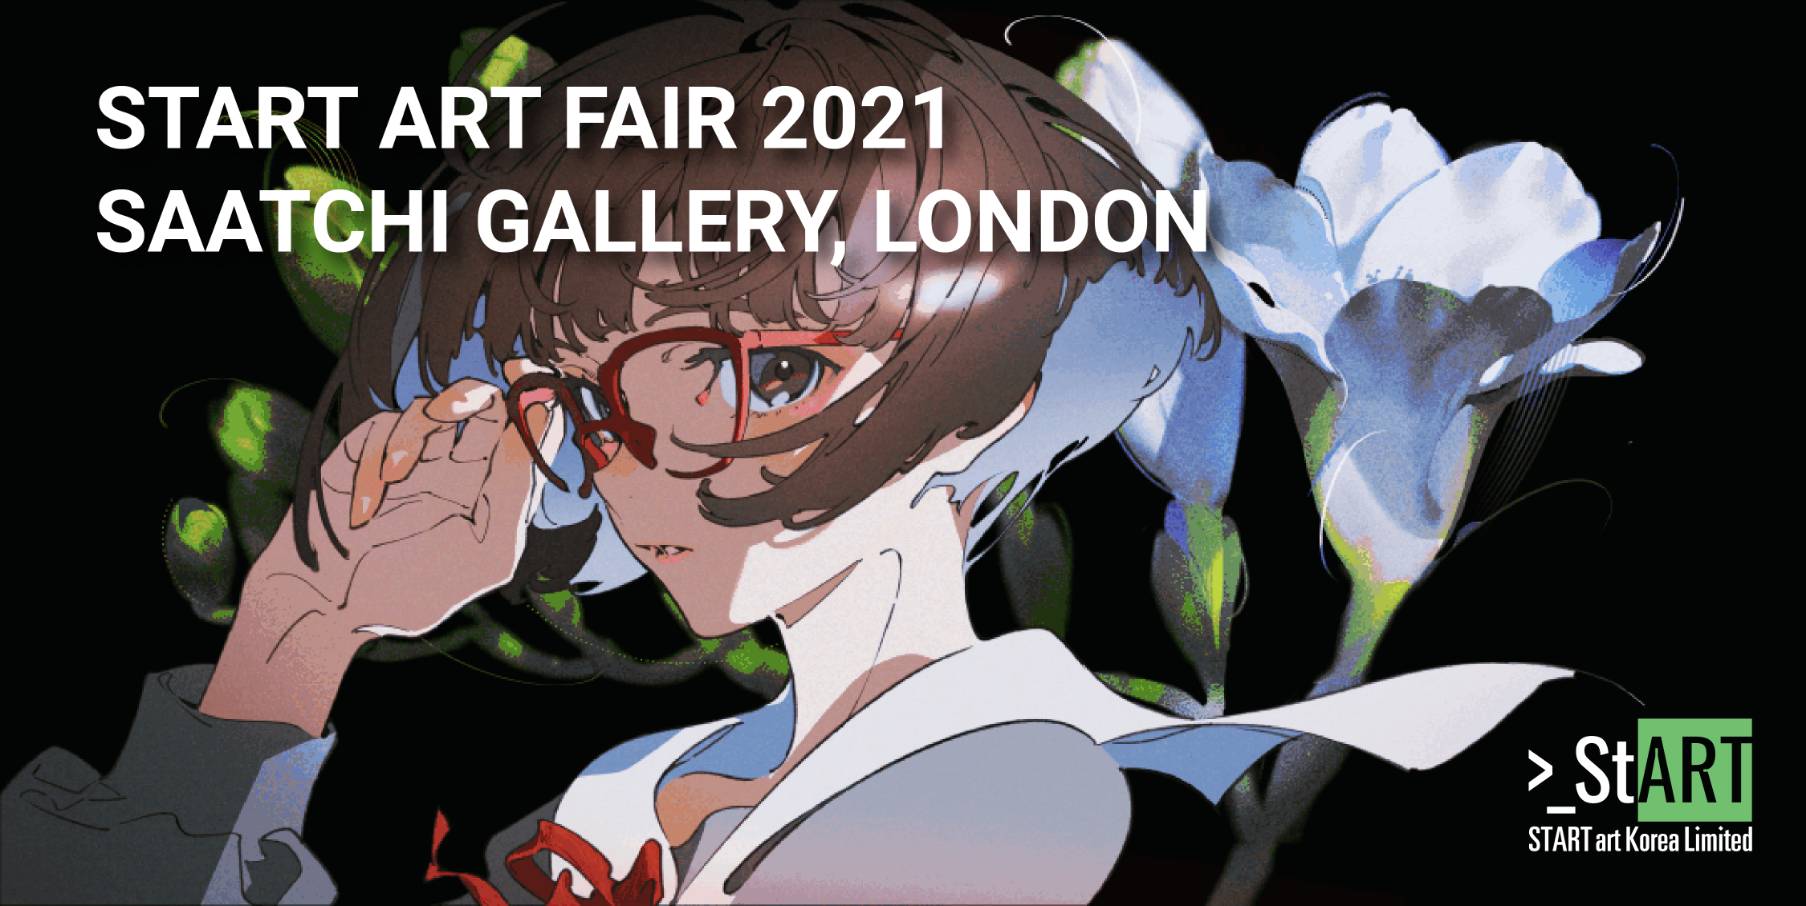 アニメーター イラストレーションアーティスト米山舞が ロンドン サーチ ギャラリーで開催 Start Art Fair 21 に日本人アーティストとして選出 株式会社あっとあっとのプレスリリース